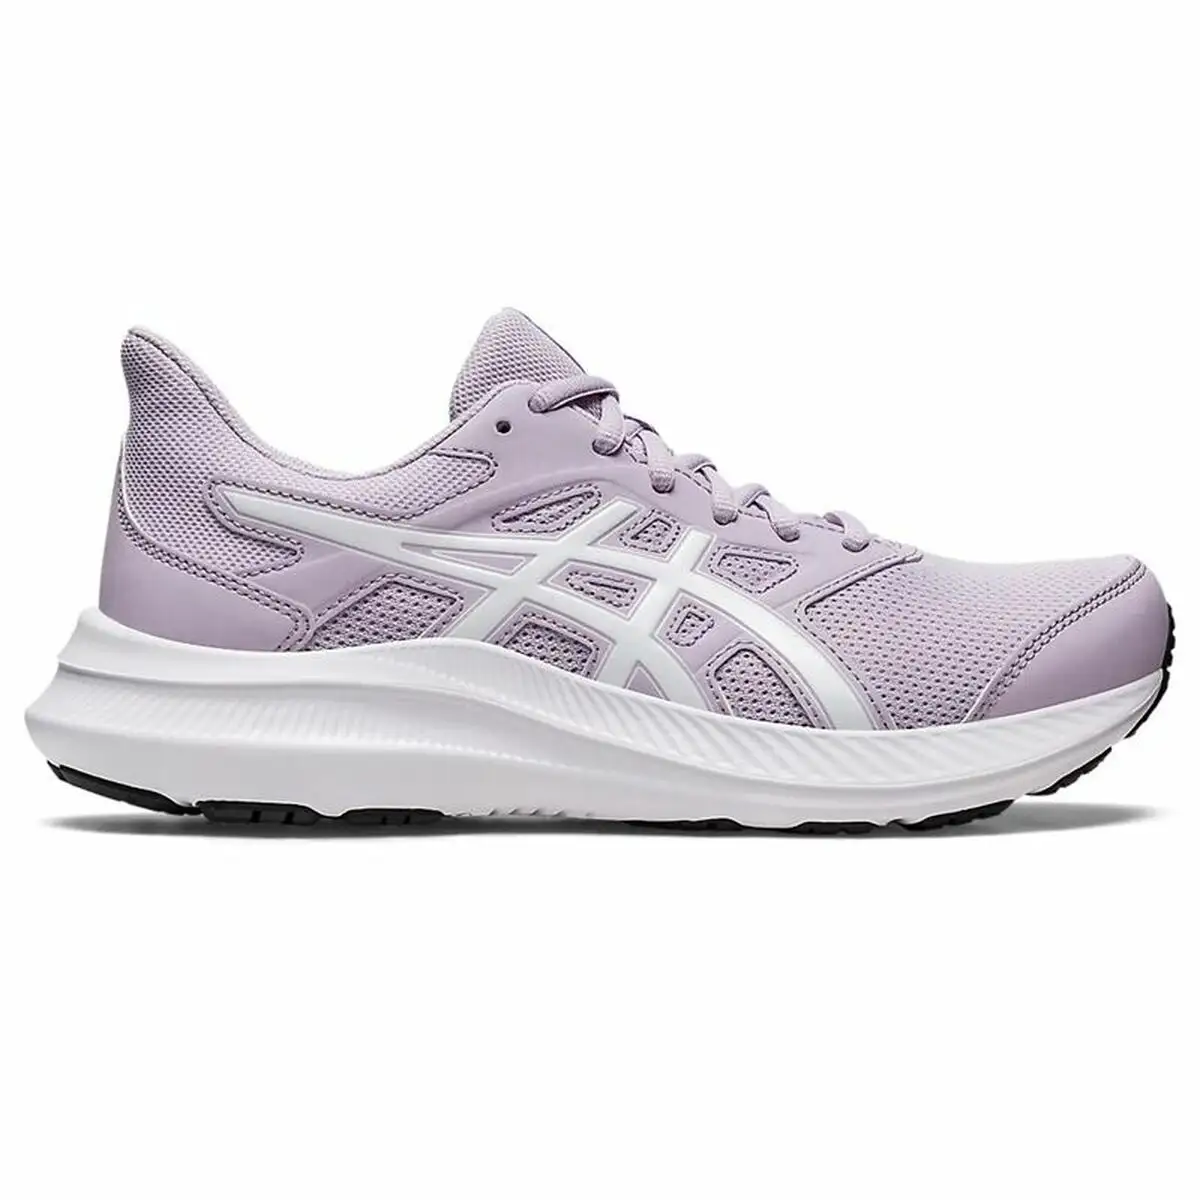 Chaussures de running pour adultes asics jolt 4 femme violet_6613. Bienvenue sur DIAYTAR SENEGAL - Où l'Authenticité Rencontre le Confort. Plongez dans notre univers de produits qui allient tradition et commodité pour répondre à vos besoins.